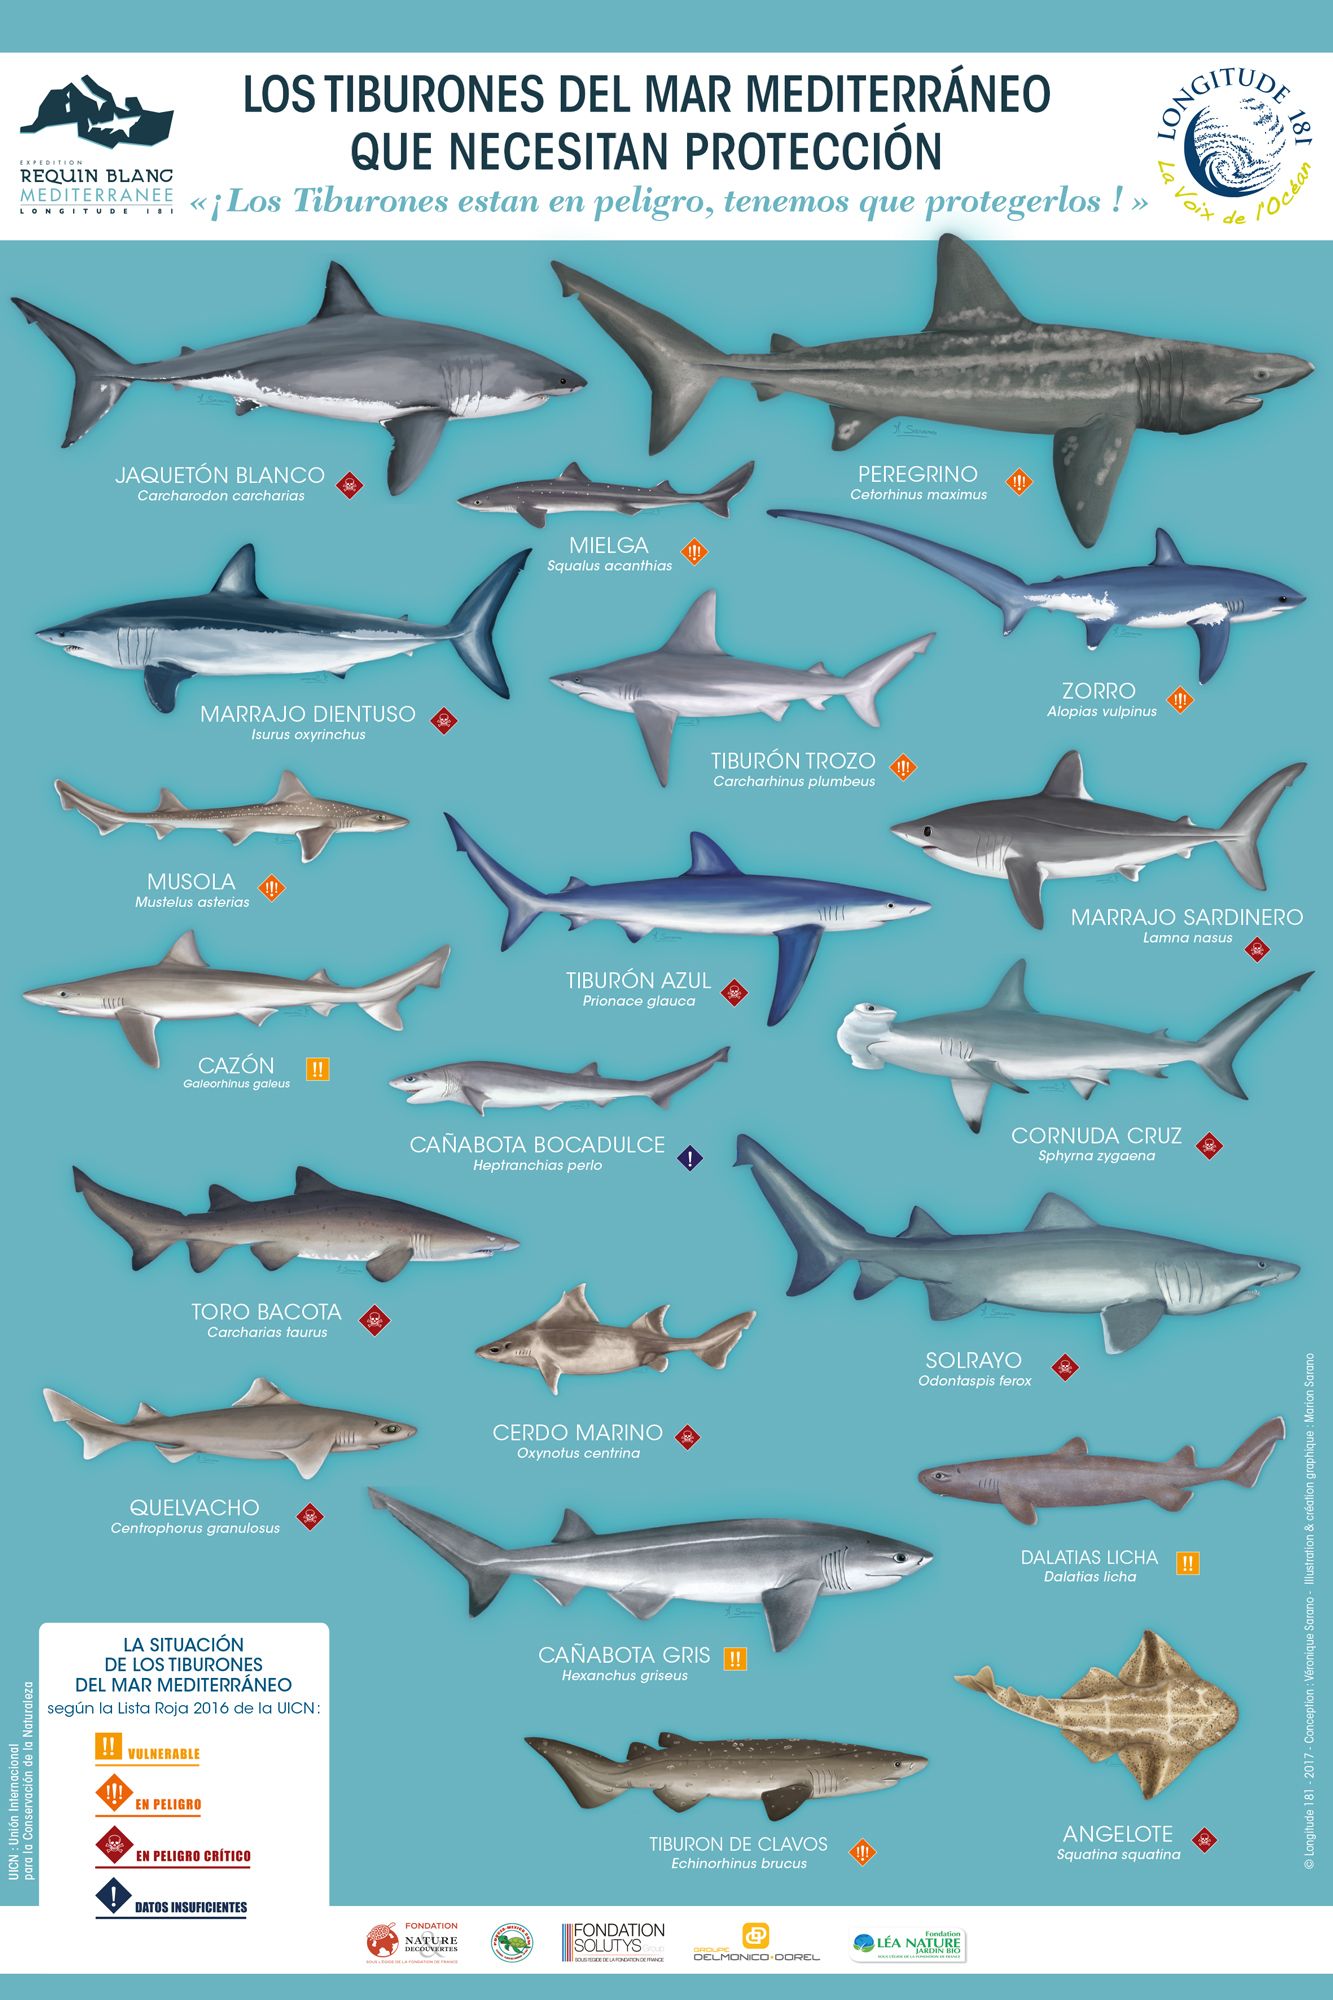 Los tiburonas del mar Mediterráneo